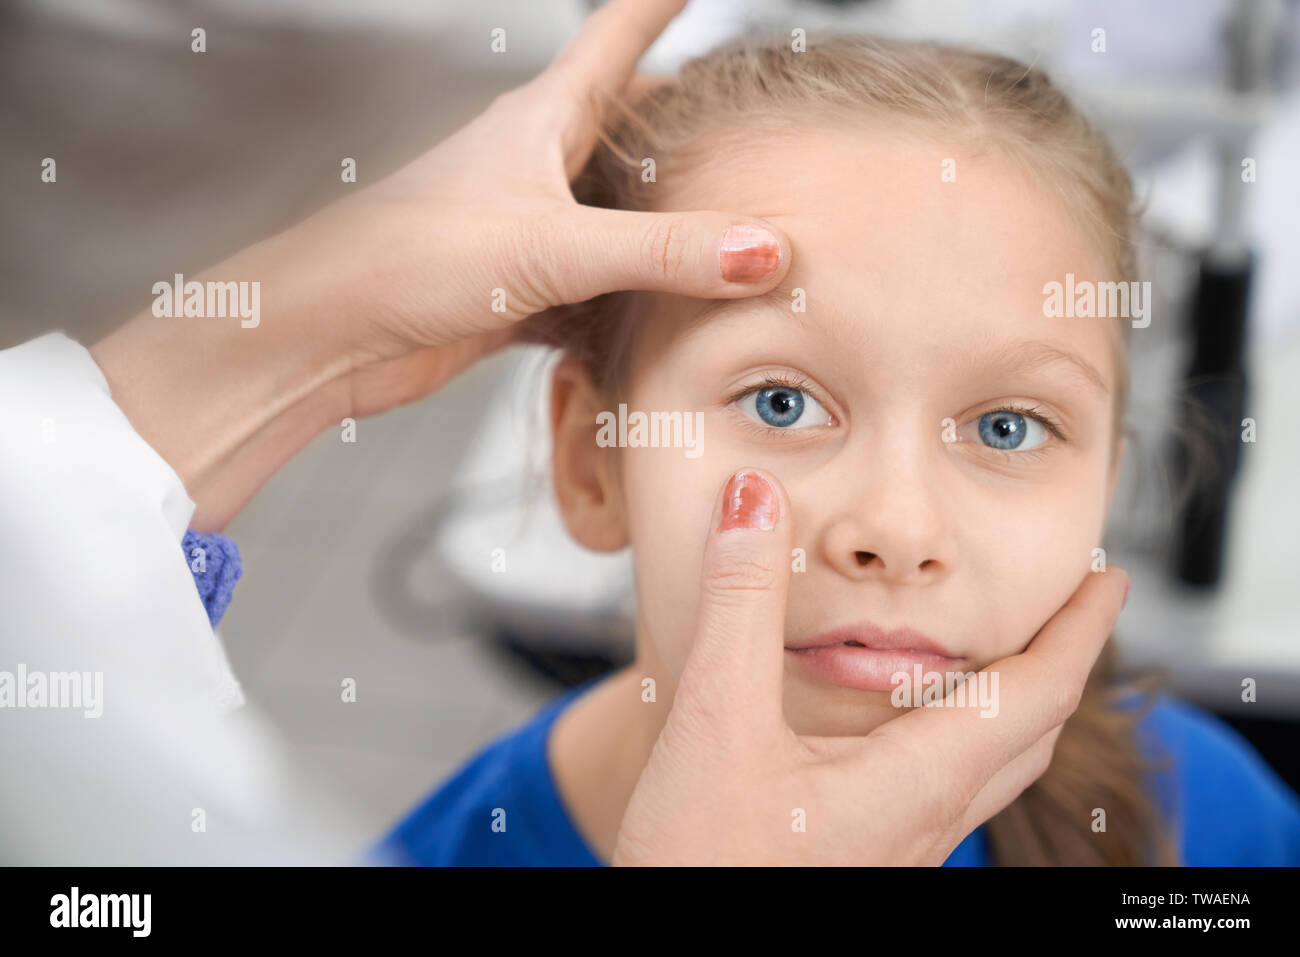 Nahaufnahme der Mädchen an der Kamera suchen, während die weiblichen Augenarzt prüfen Vision in der Klinik. Kind mit blauen Augen sitzen in optischen Speichern, während Arzt auf Augenhöhe Schüler suchen. Konzept der medizinischen Untersuchung. Stockfoto